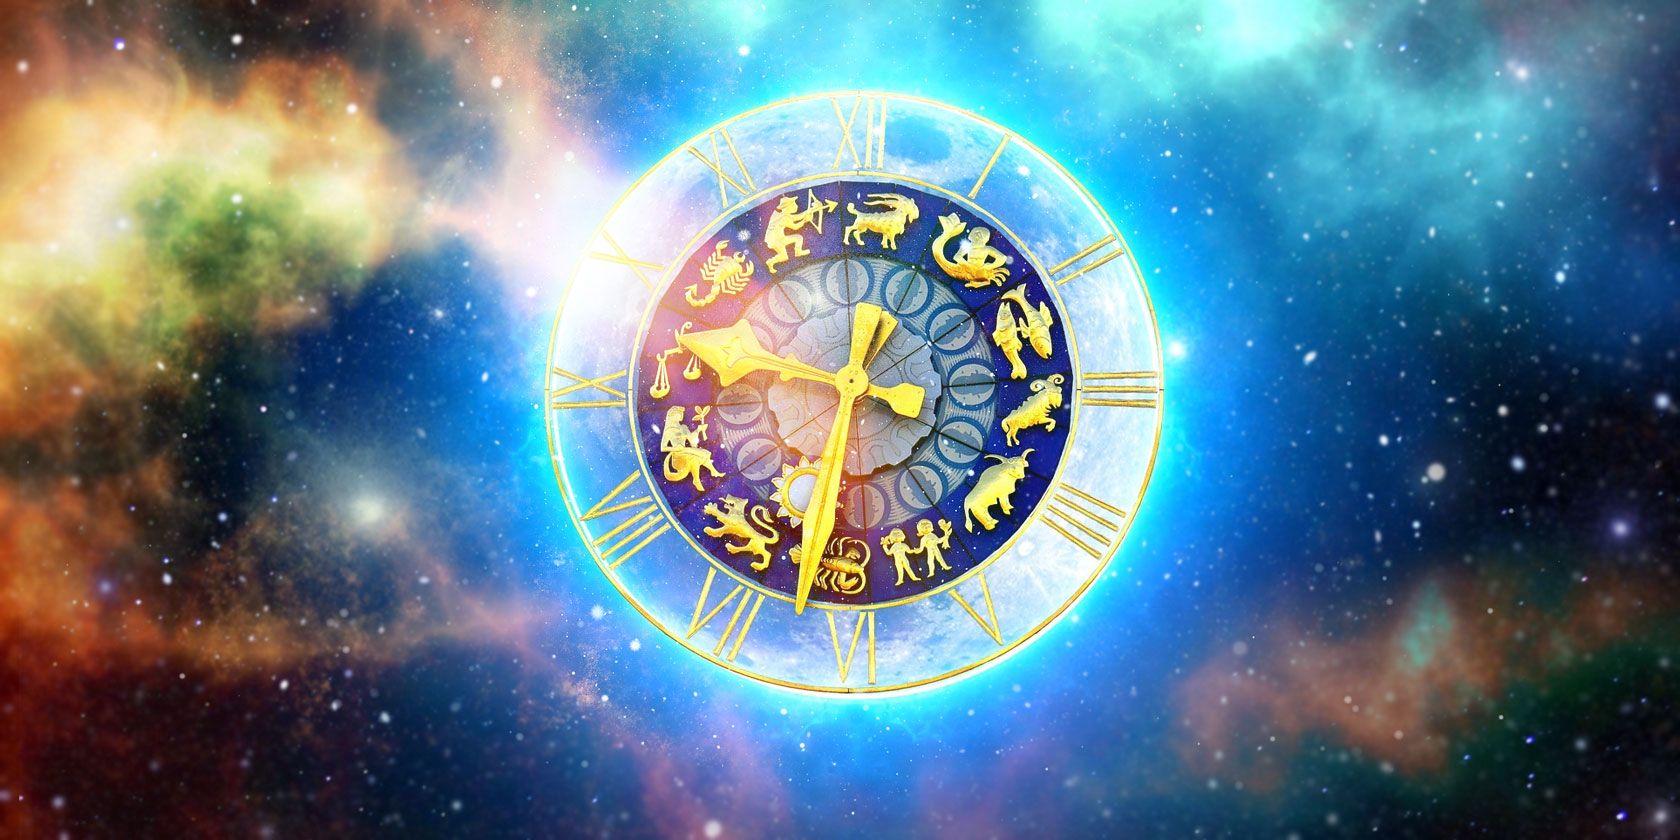 astrology websites reddit